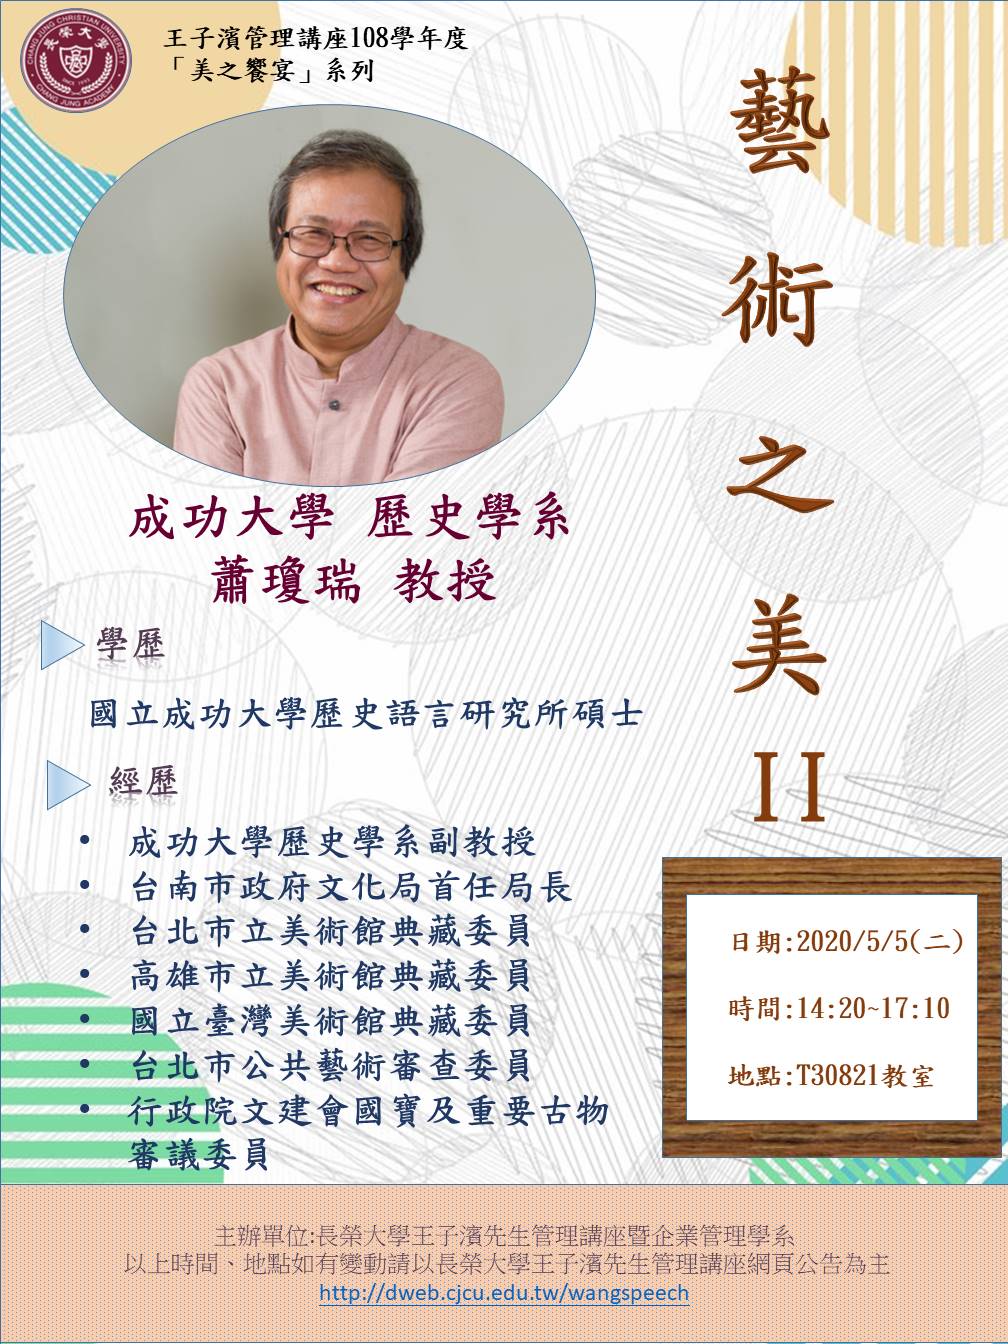 敬邀參加本週二下午(05/05)王子濱先生管理講---藝術之美貳_蕭瓊瑞 教授 專題演講